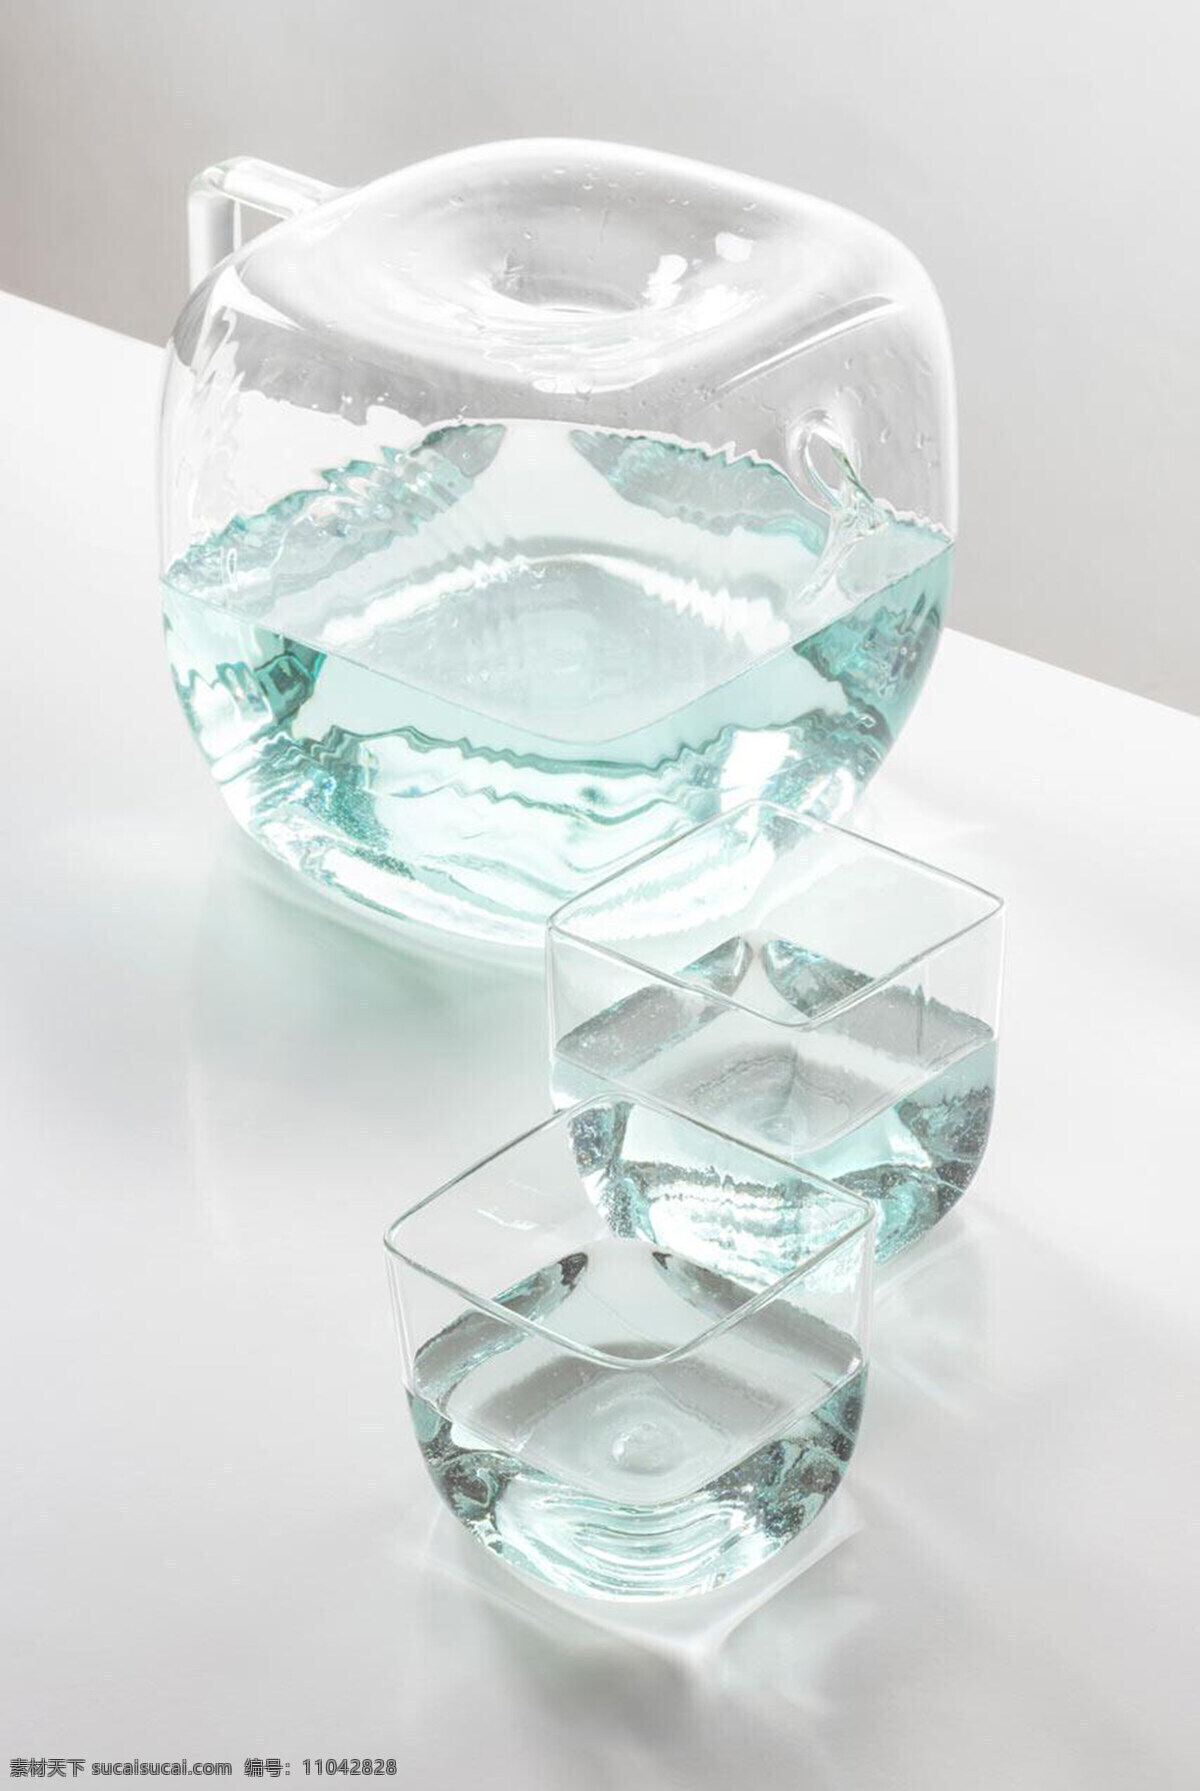 玻璃 水壶 创意 透明 产品设计 工业设计 灵感 清新 小饰品